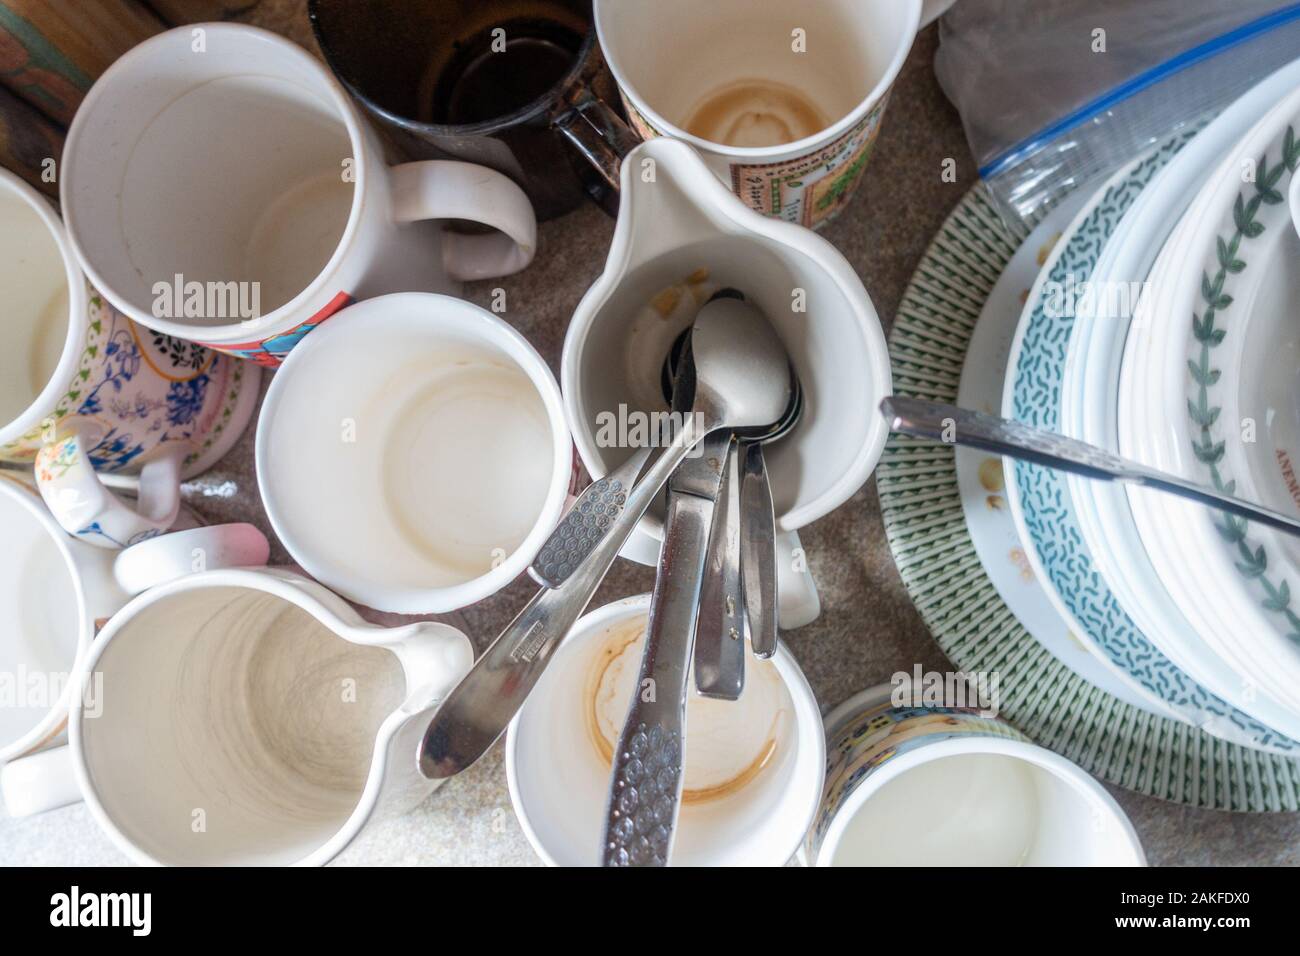 Schmutzige Tassen, Tassen, Teller und Besteck an der Seite einer Spüle  wartet gereinigt und gewaschen Stockfotografie - Alamy